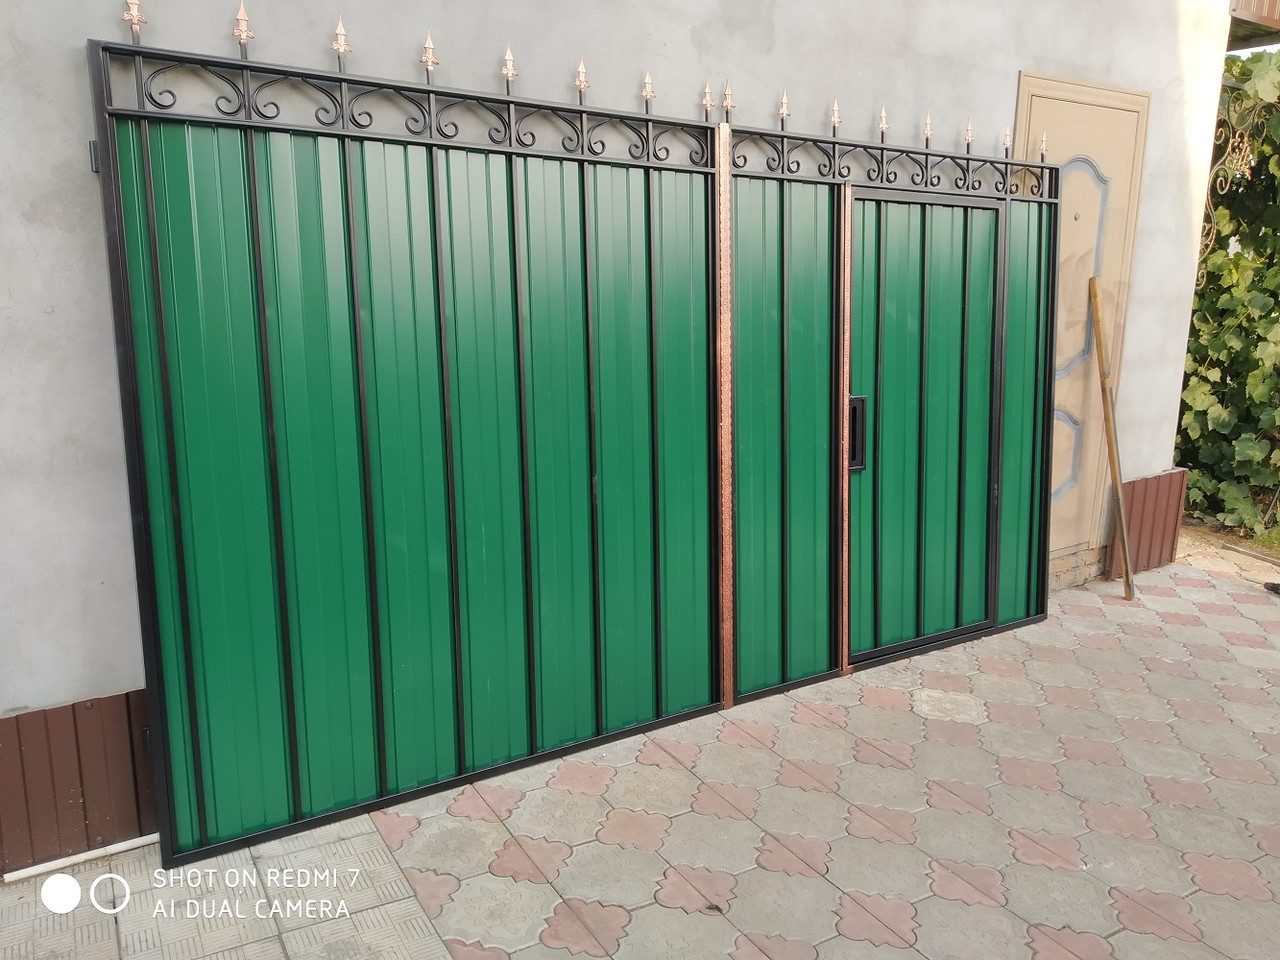 Откатные ворота с калиткой внутри фото: раздвижные ворота из профнастила и металла со встроенной конструкцией калитки